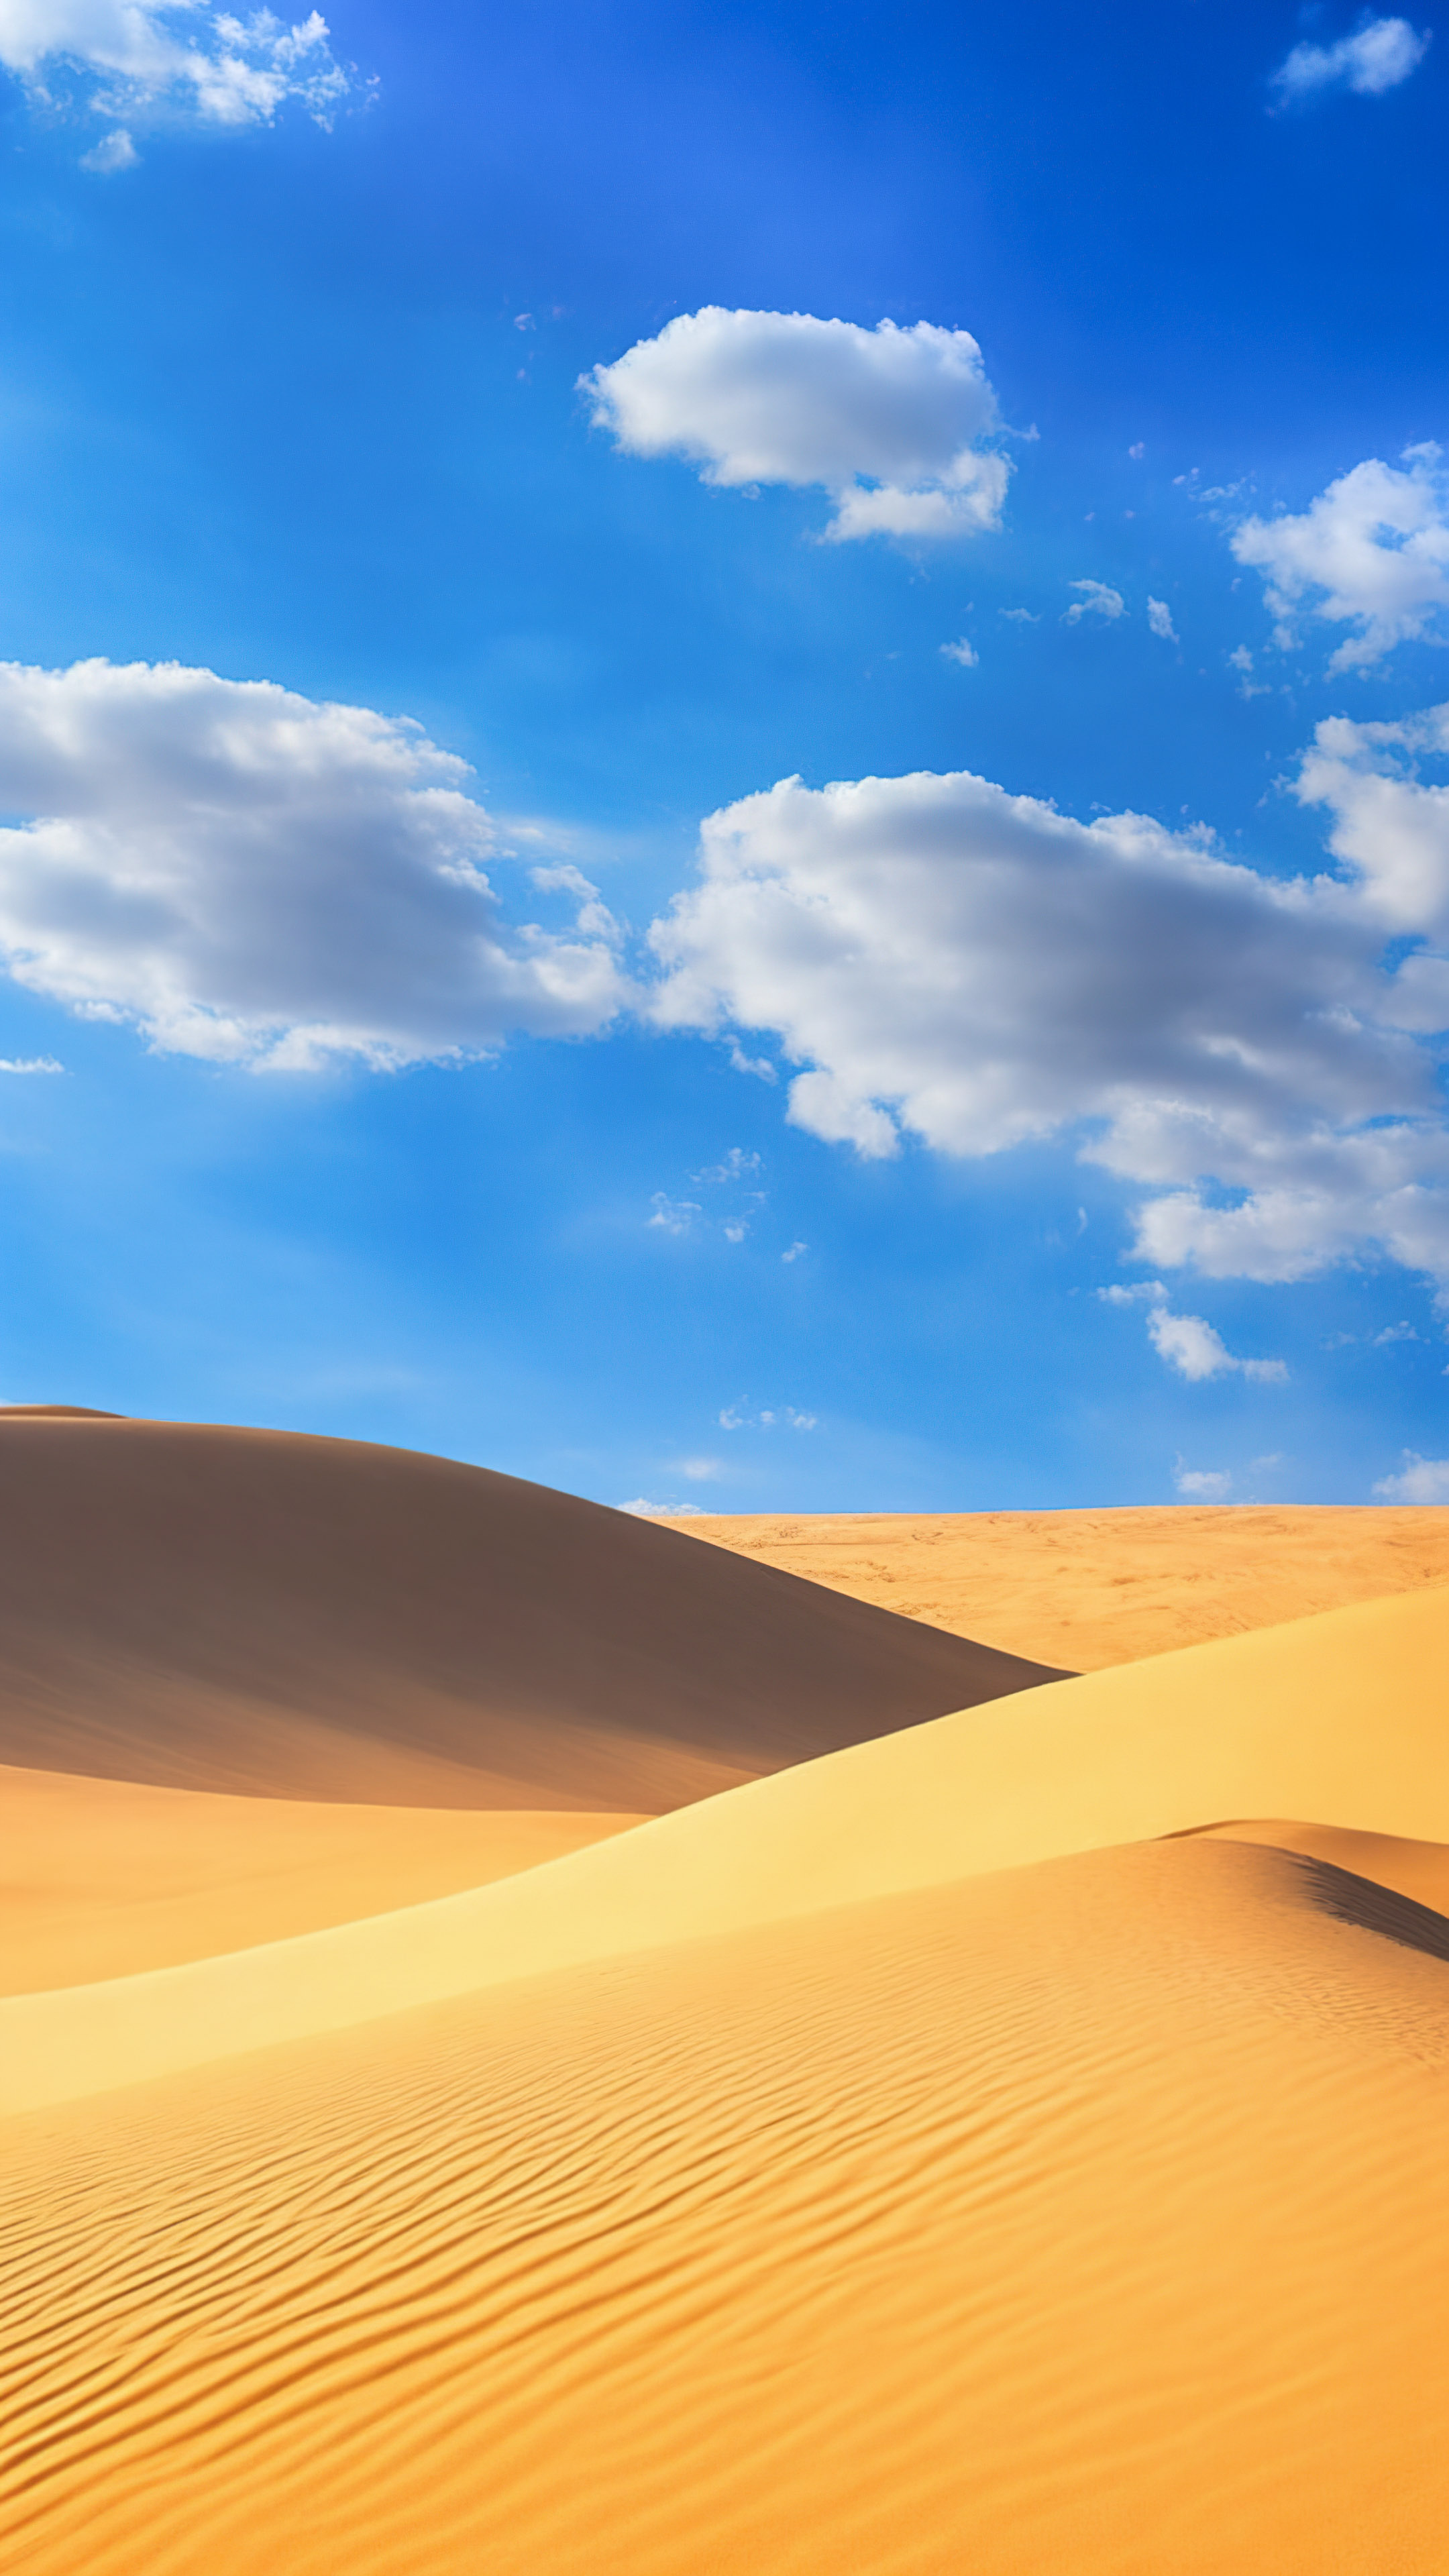 Réjouissez-vous de la quiétude de notre fond d'écran de ciel, présentant un paysage désertique serein avec des dunes de sable s'étendant jusqu'à l'horizon sous un vaste ciel bleu.